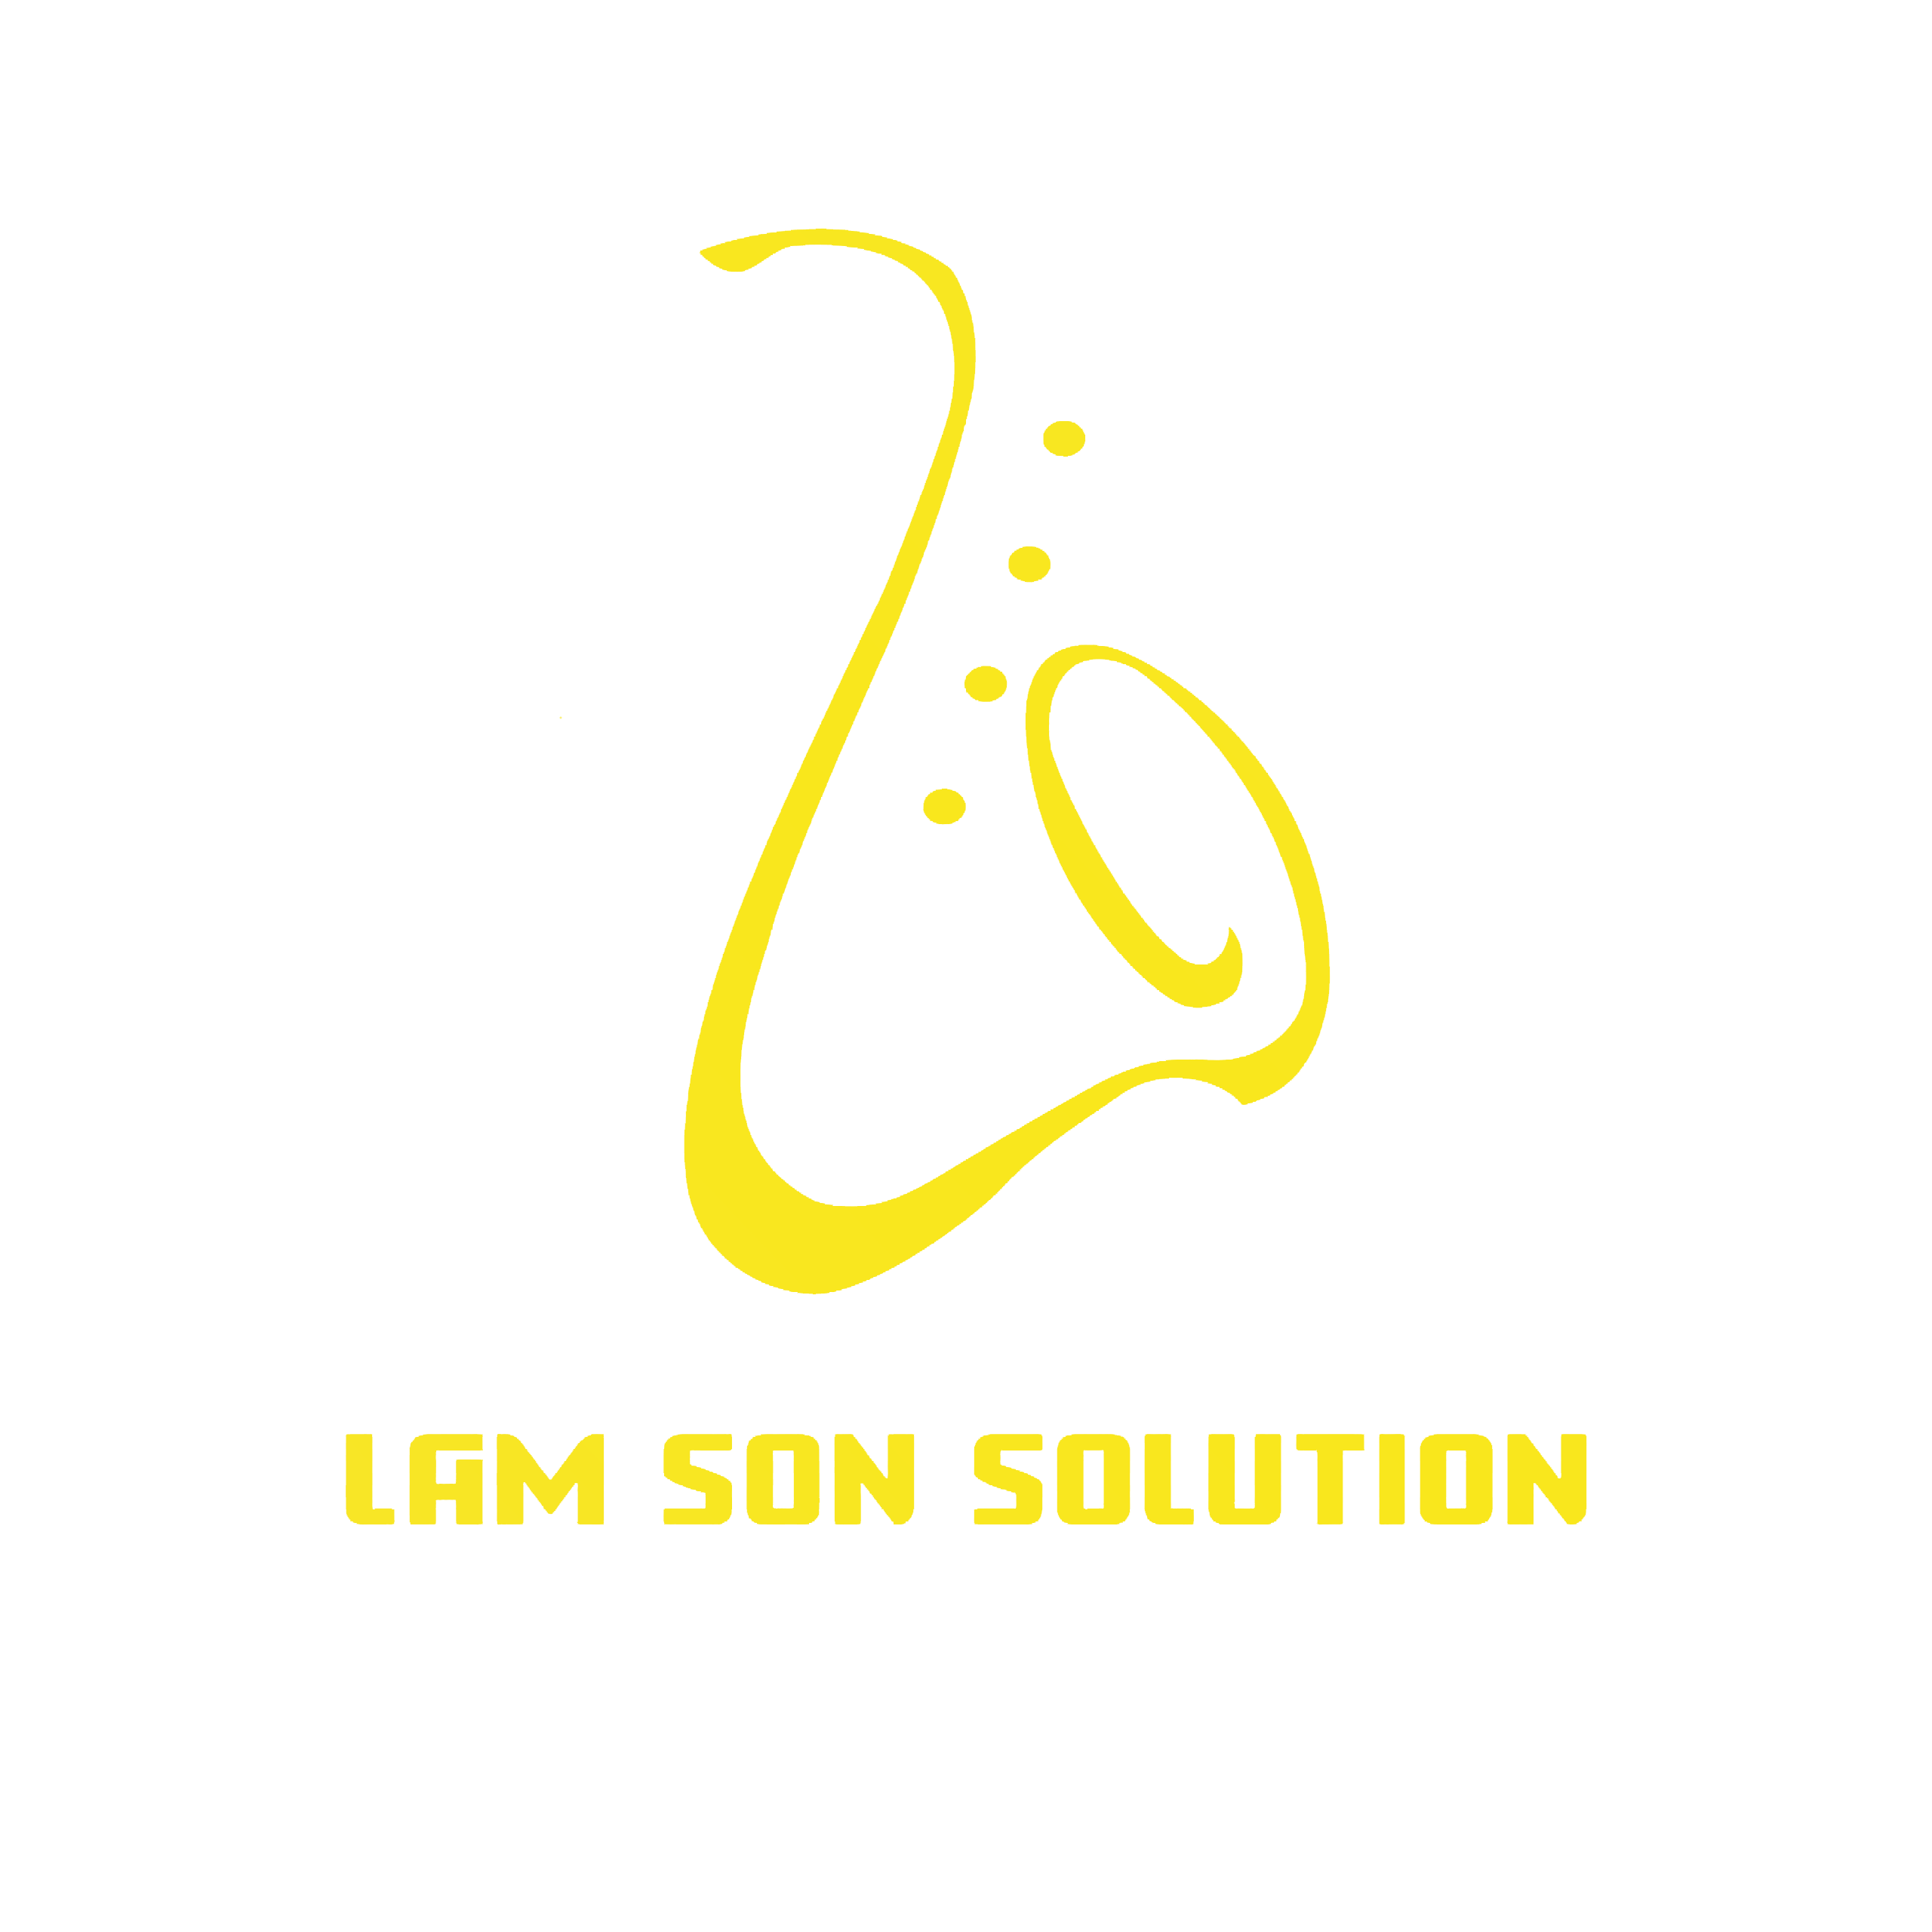 Lam Sơn Solution